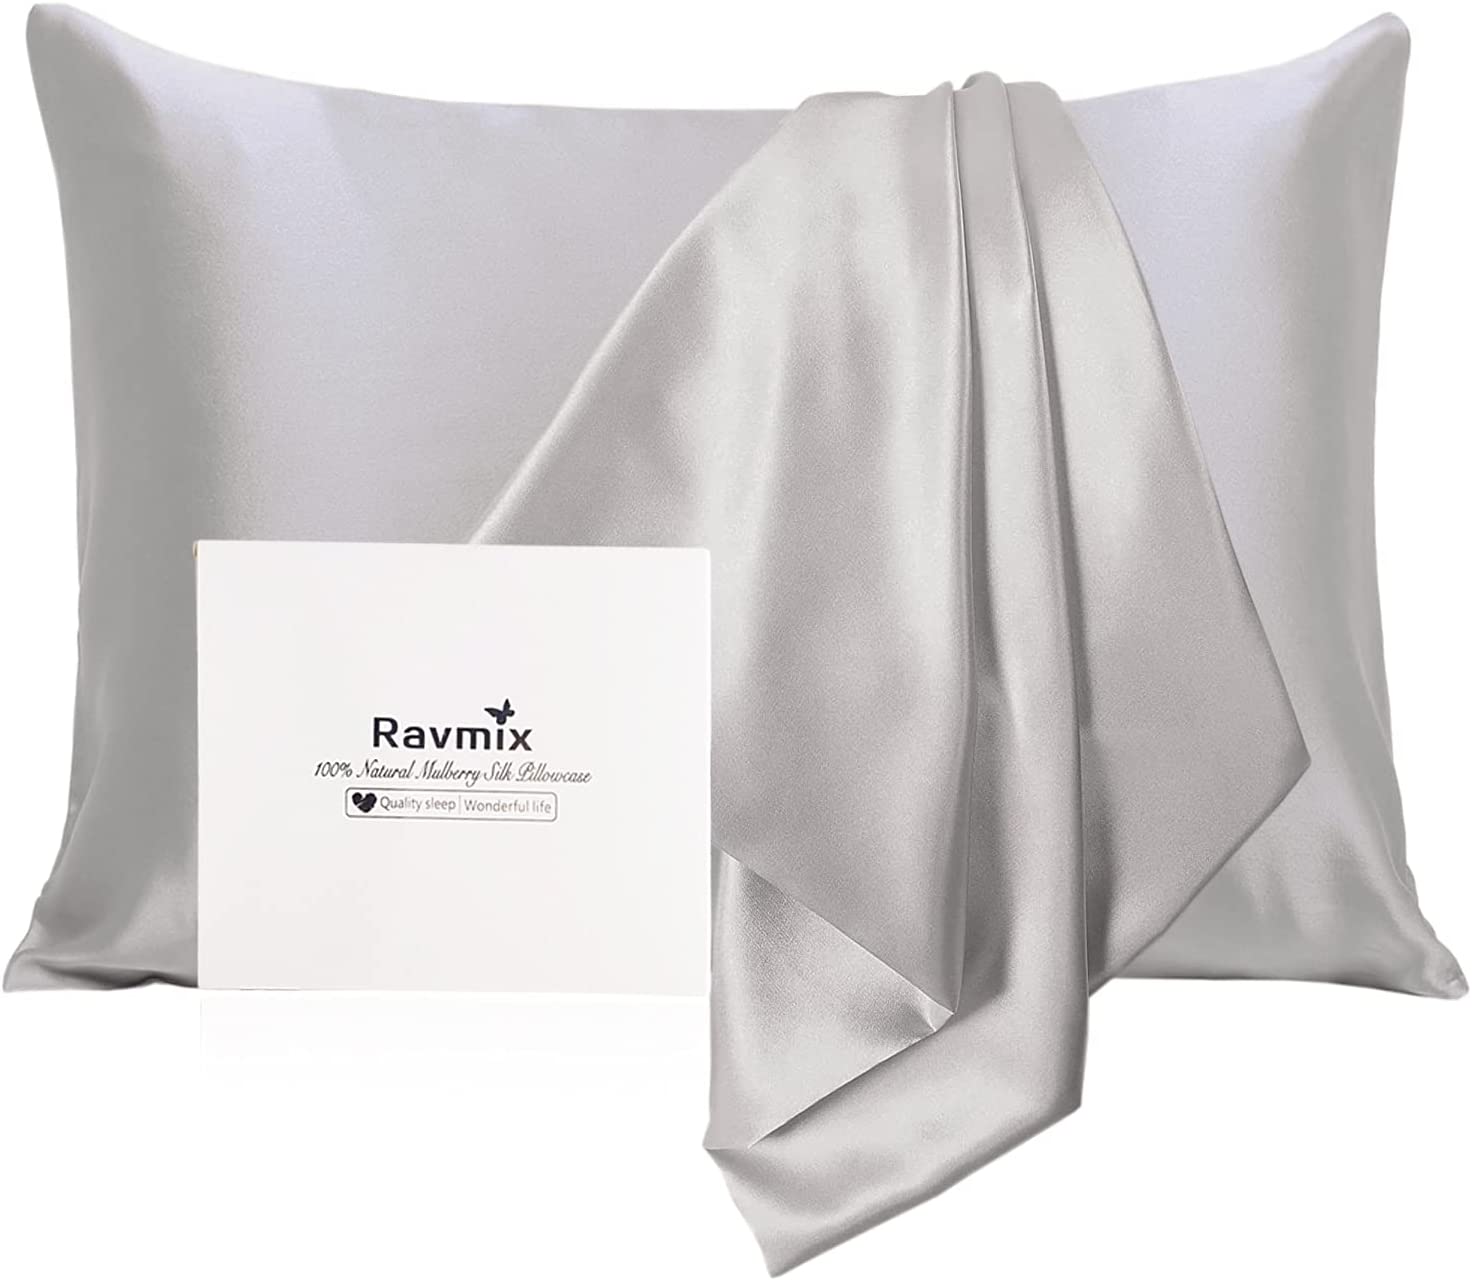 Ravmix silk pillowcase